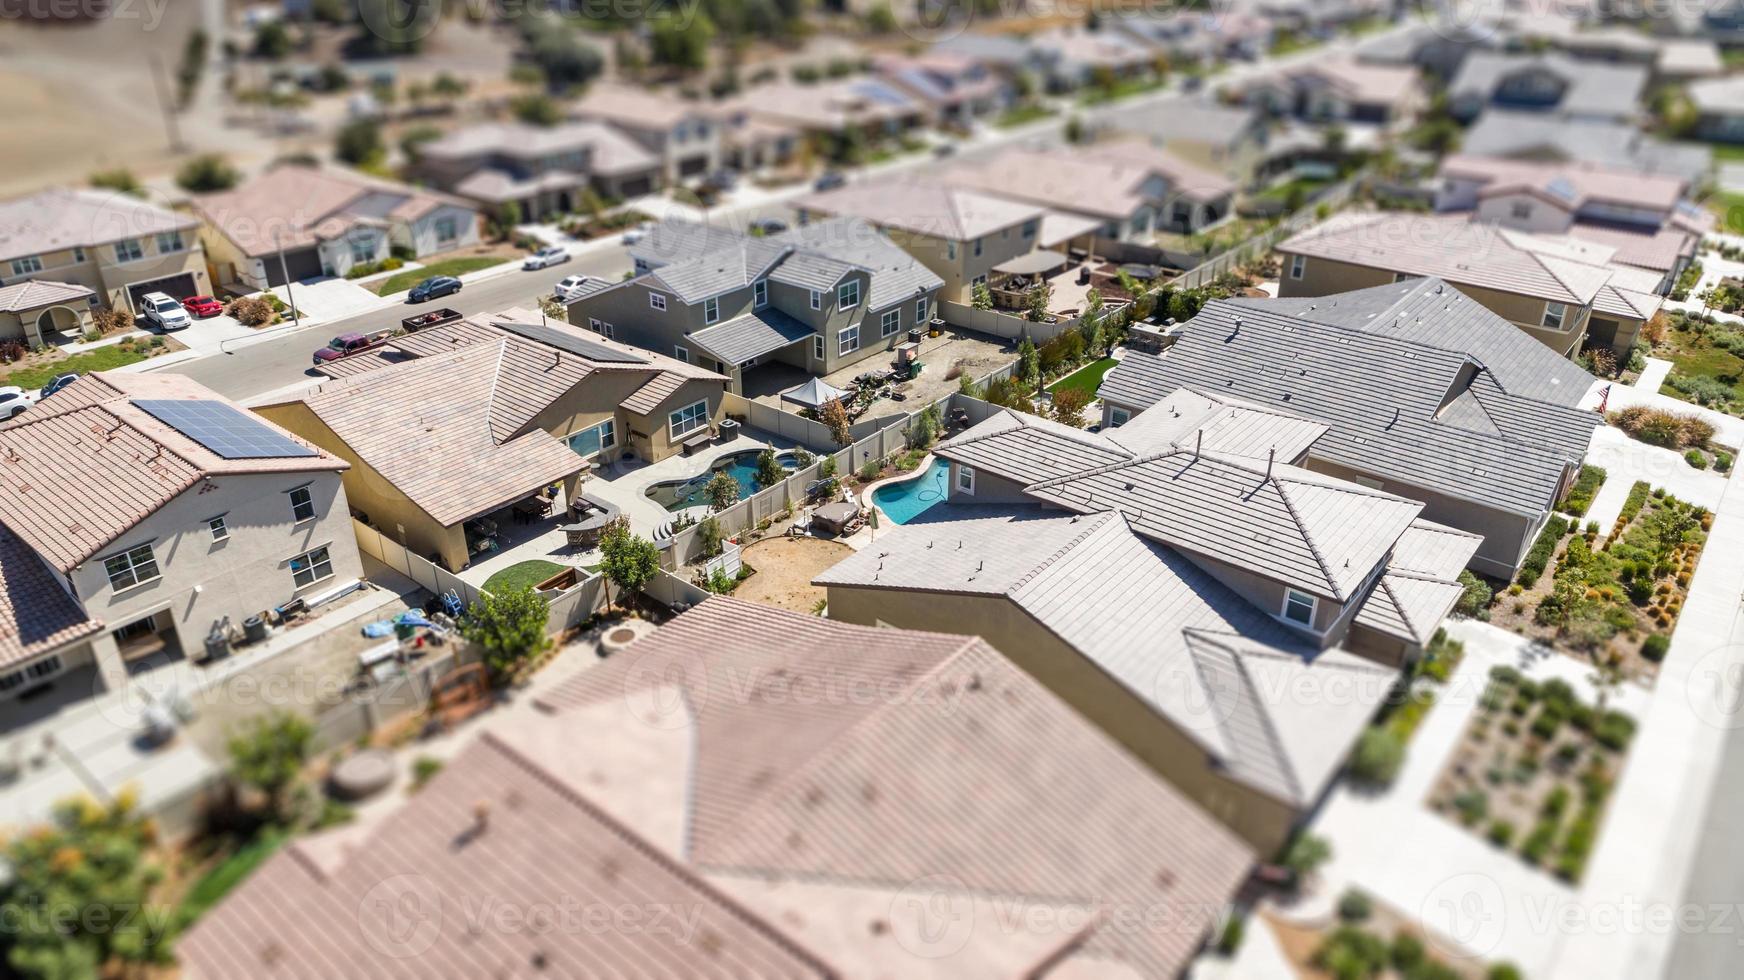 vista aérea del barrio poblado de casas con desenfoque de cambio de inclinación foto